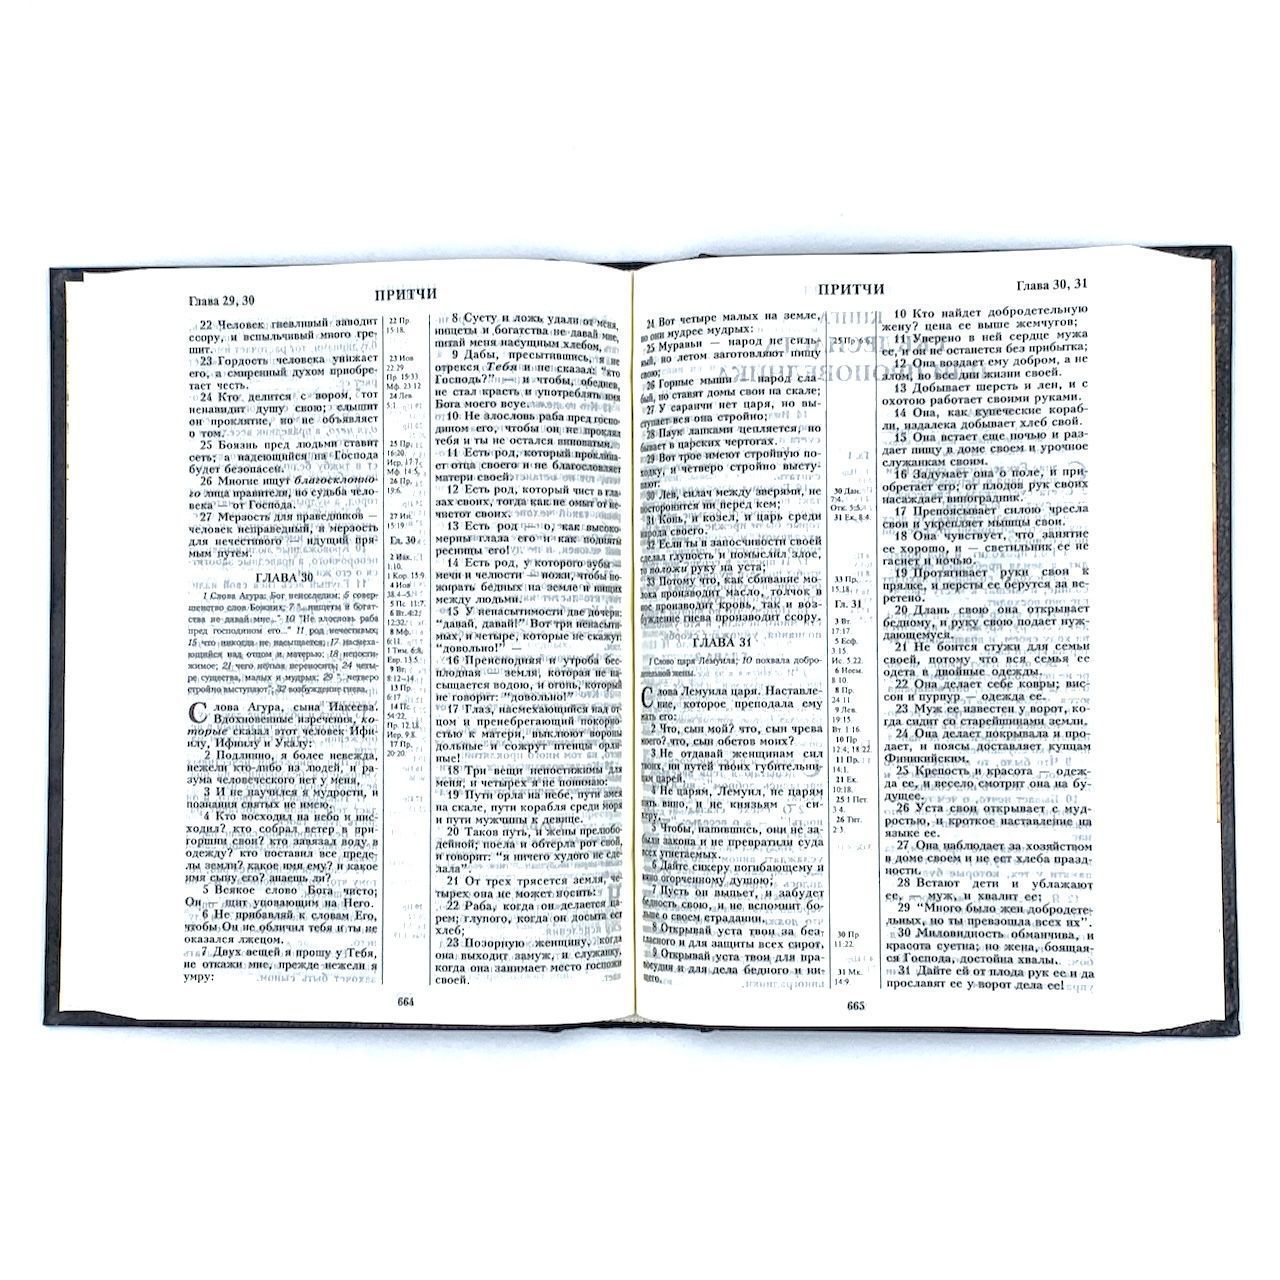 Библия 055  твердый переплет, цвет черный, Крест надпись золотом Библия, средний формат, 145*205 мм, парал. места по центру страницы, кремовые страницы,  крупный шрифт